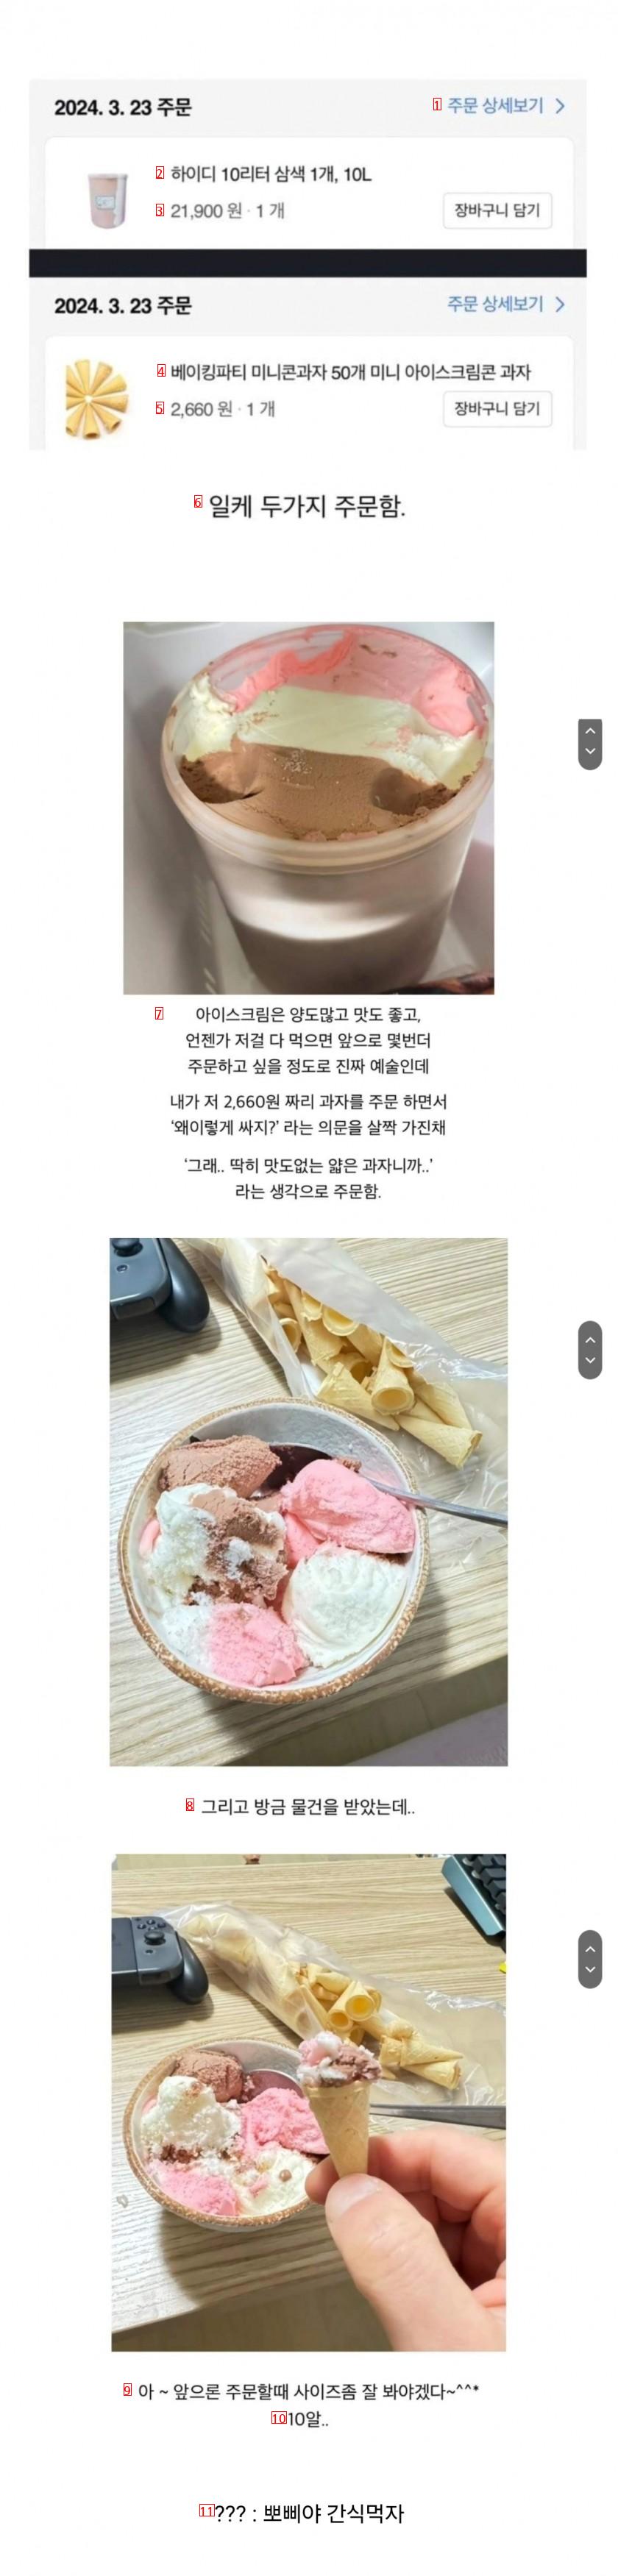 쿠팡으로 아이스크림 산 후기